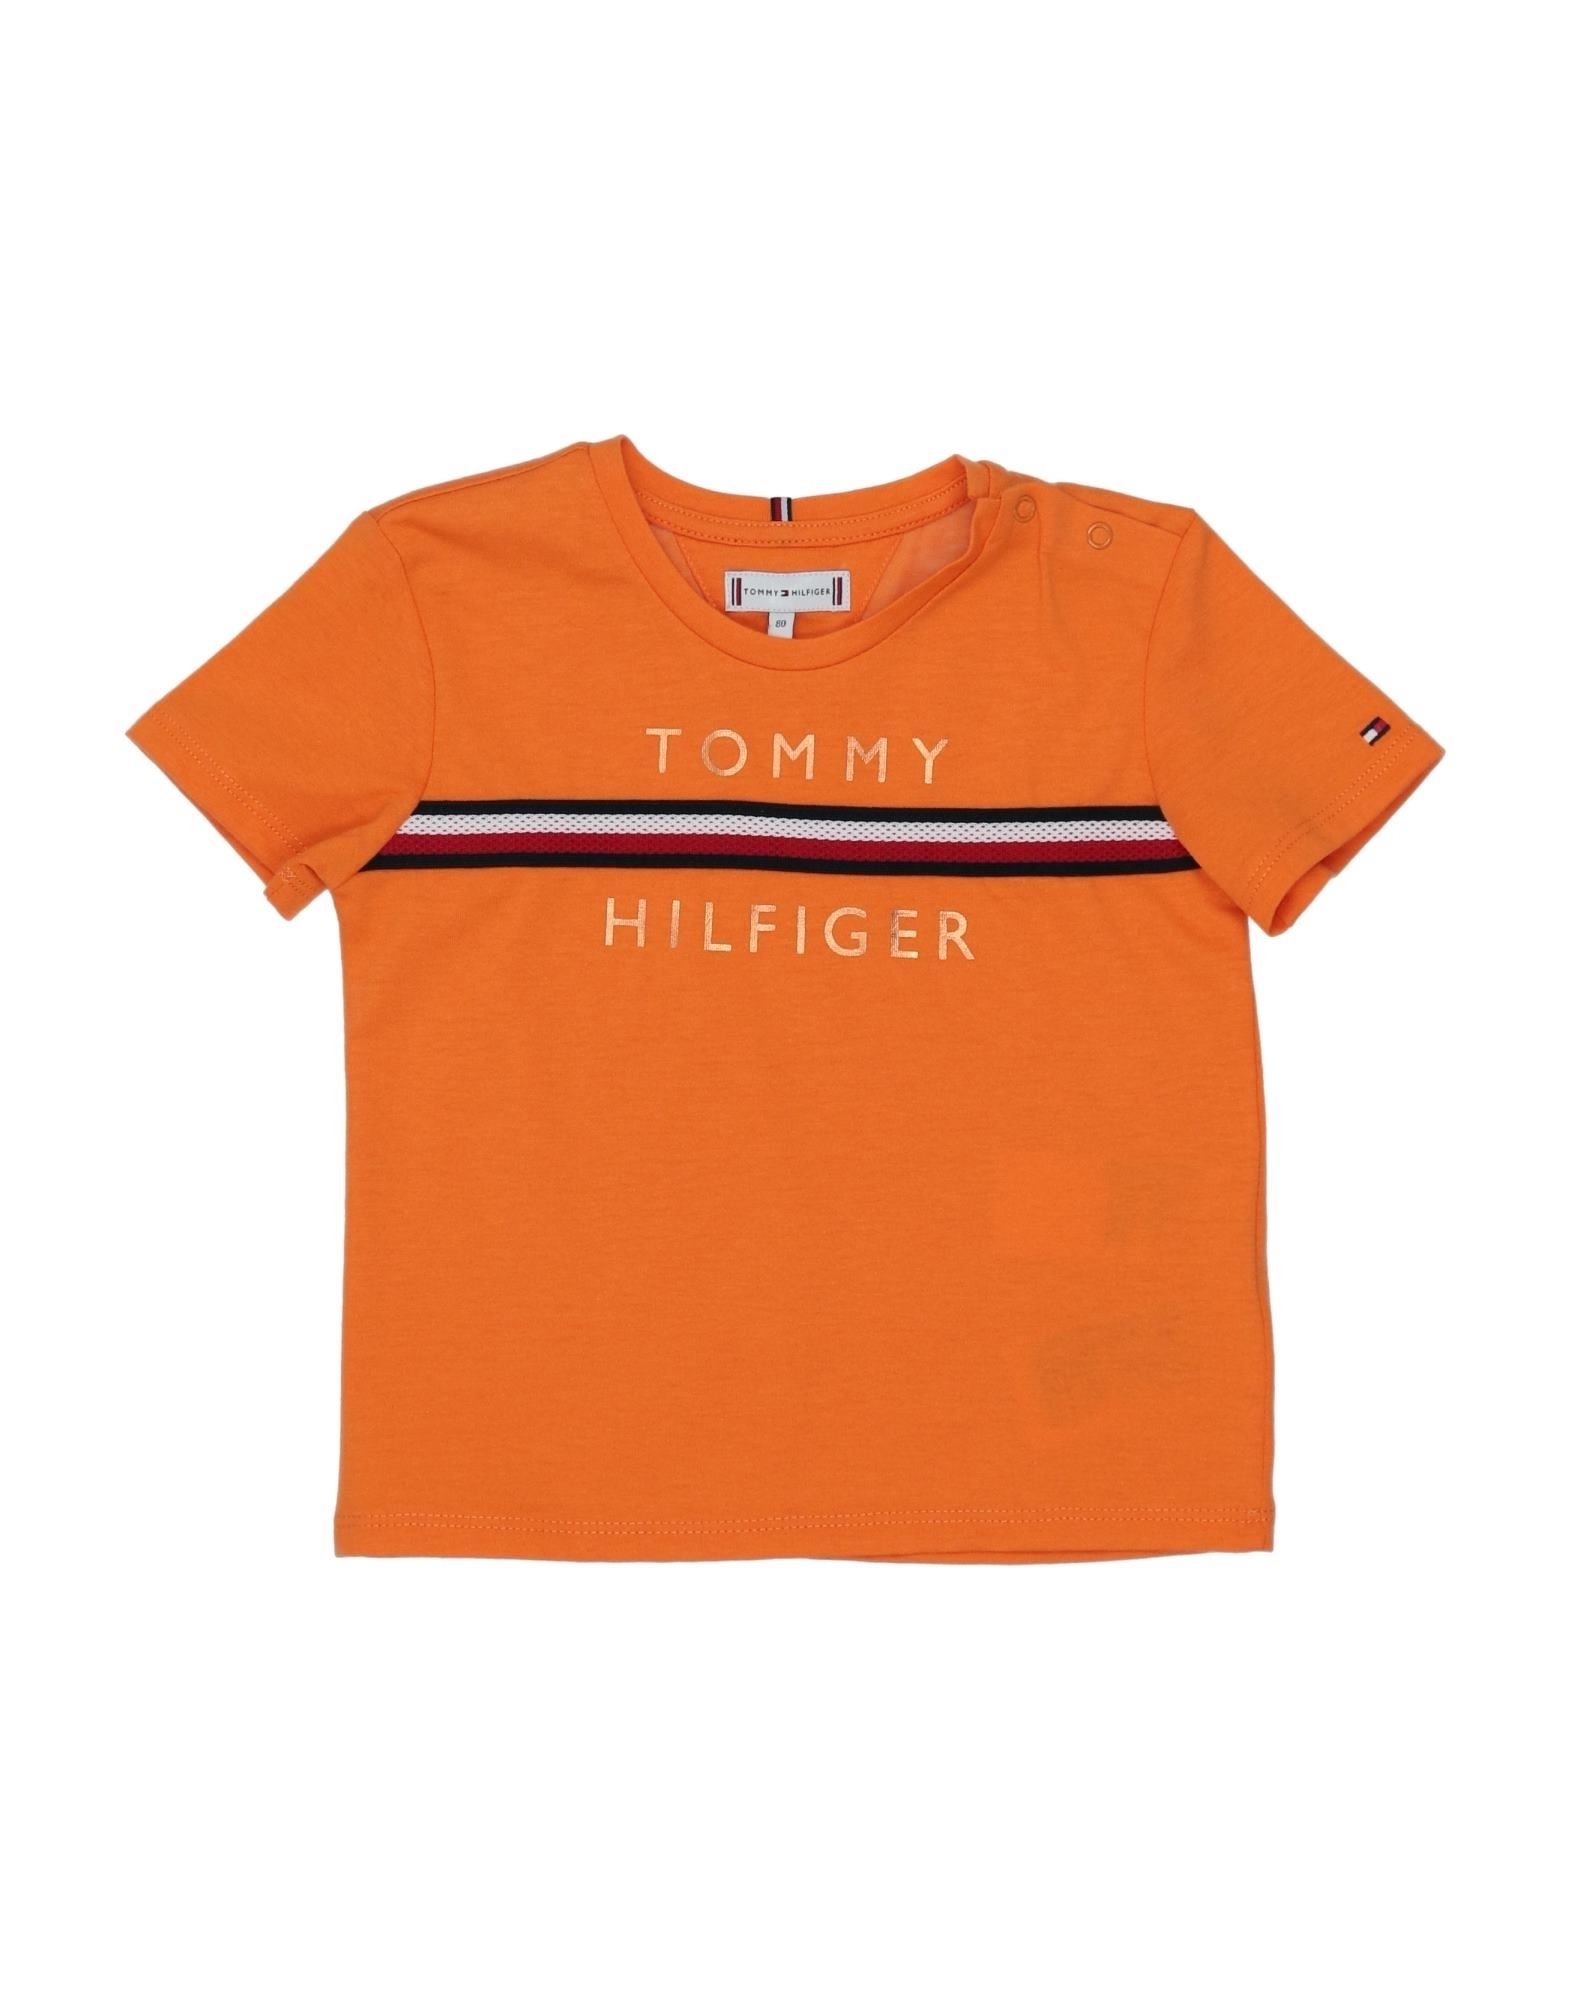 TOMMY HILFIGER T-shirts Kinder Orange von TOMMY HILFIGER